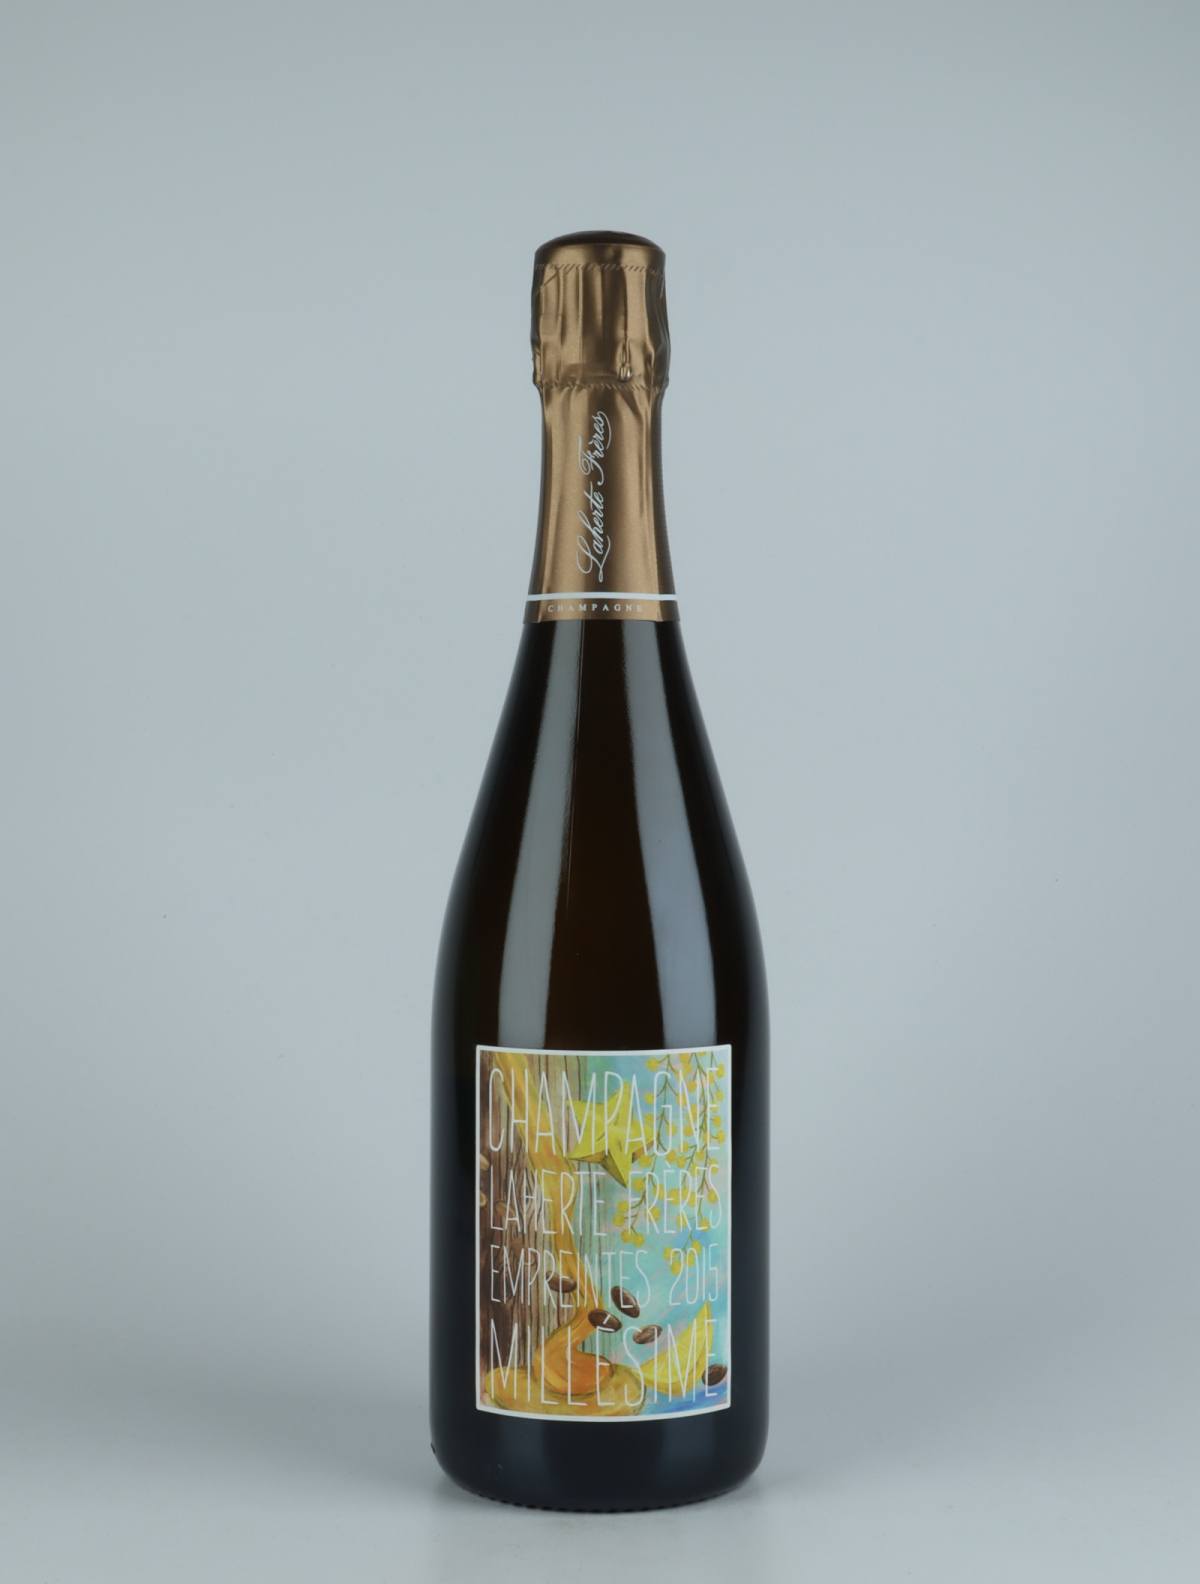 En flaske 2015 Les Empreintes - Extra Brut Mousserende fra Laherte Frères, Champagne i Frankrig